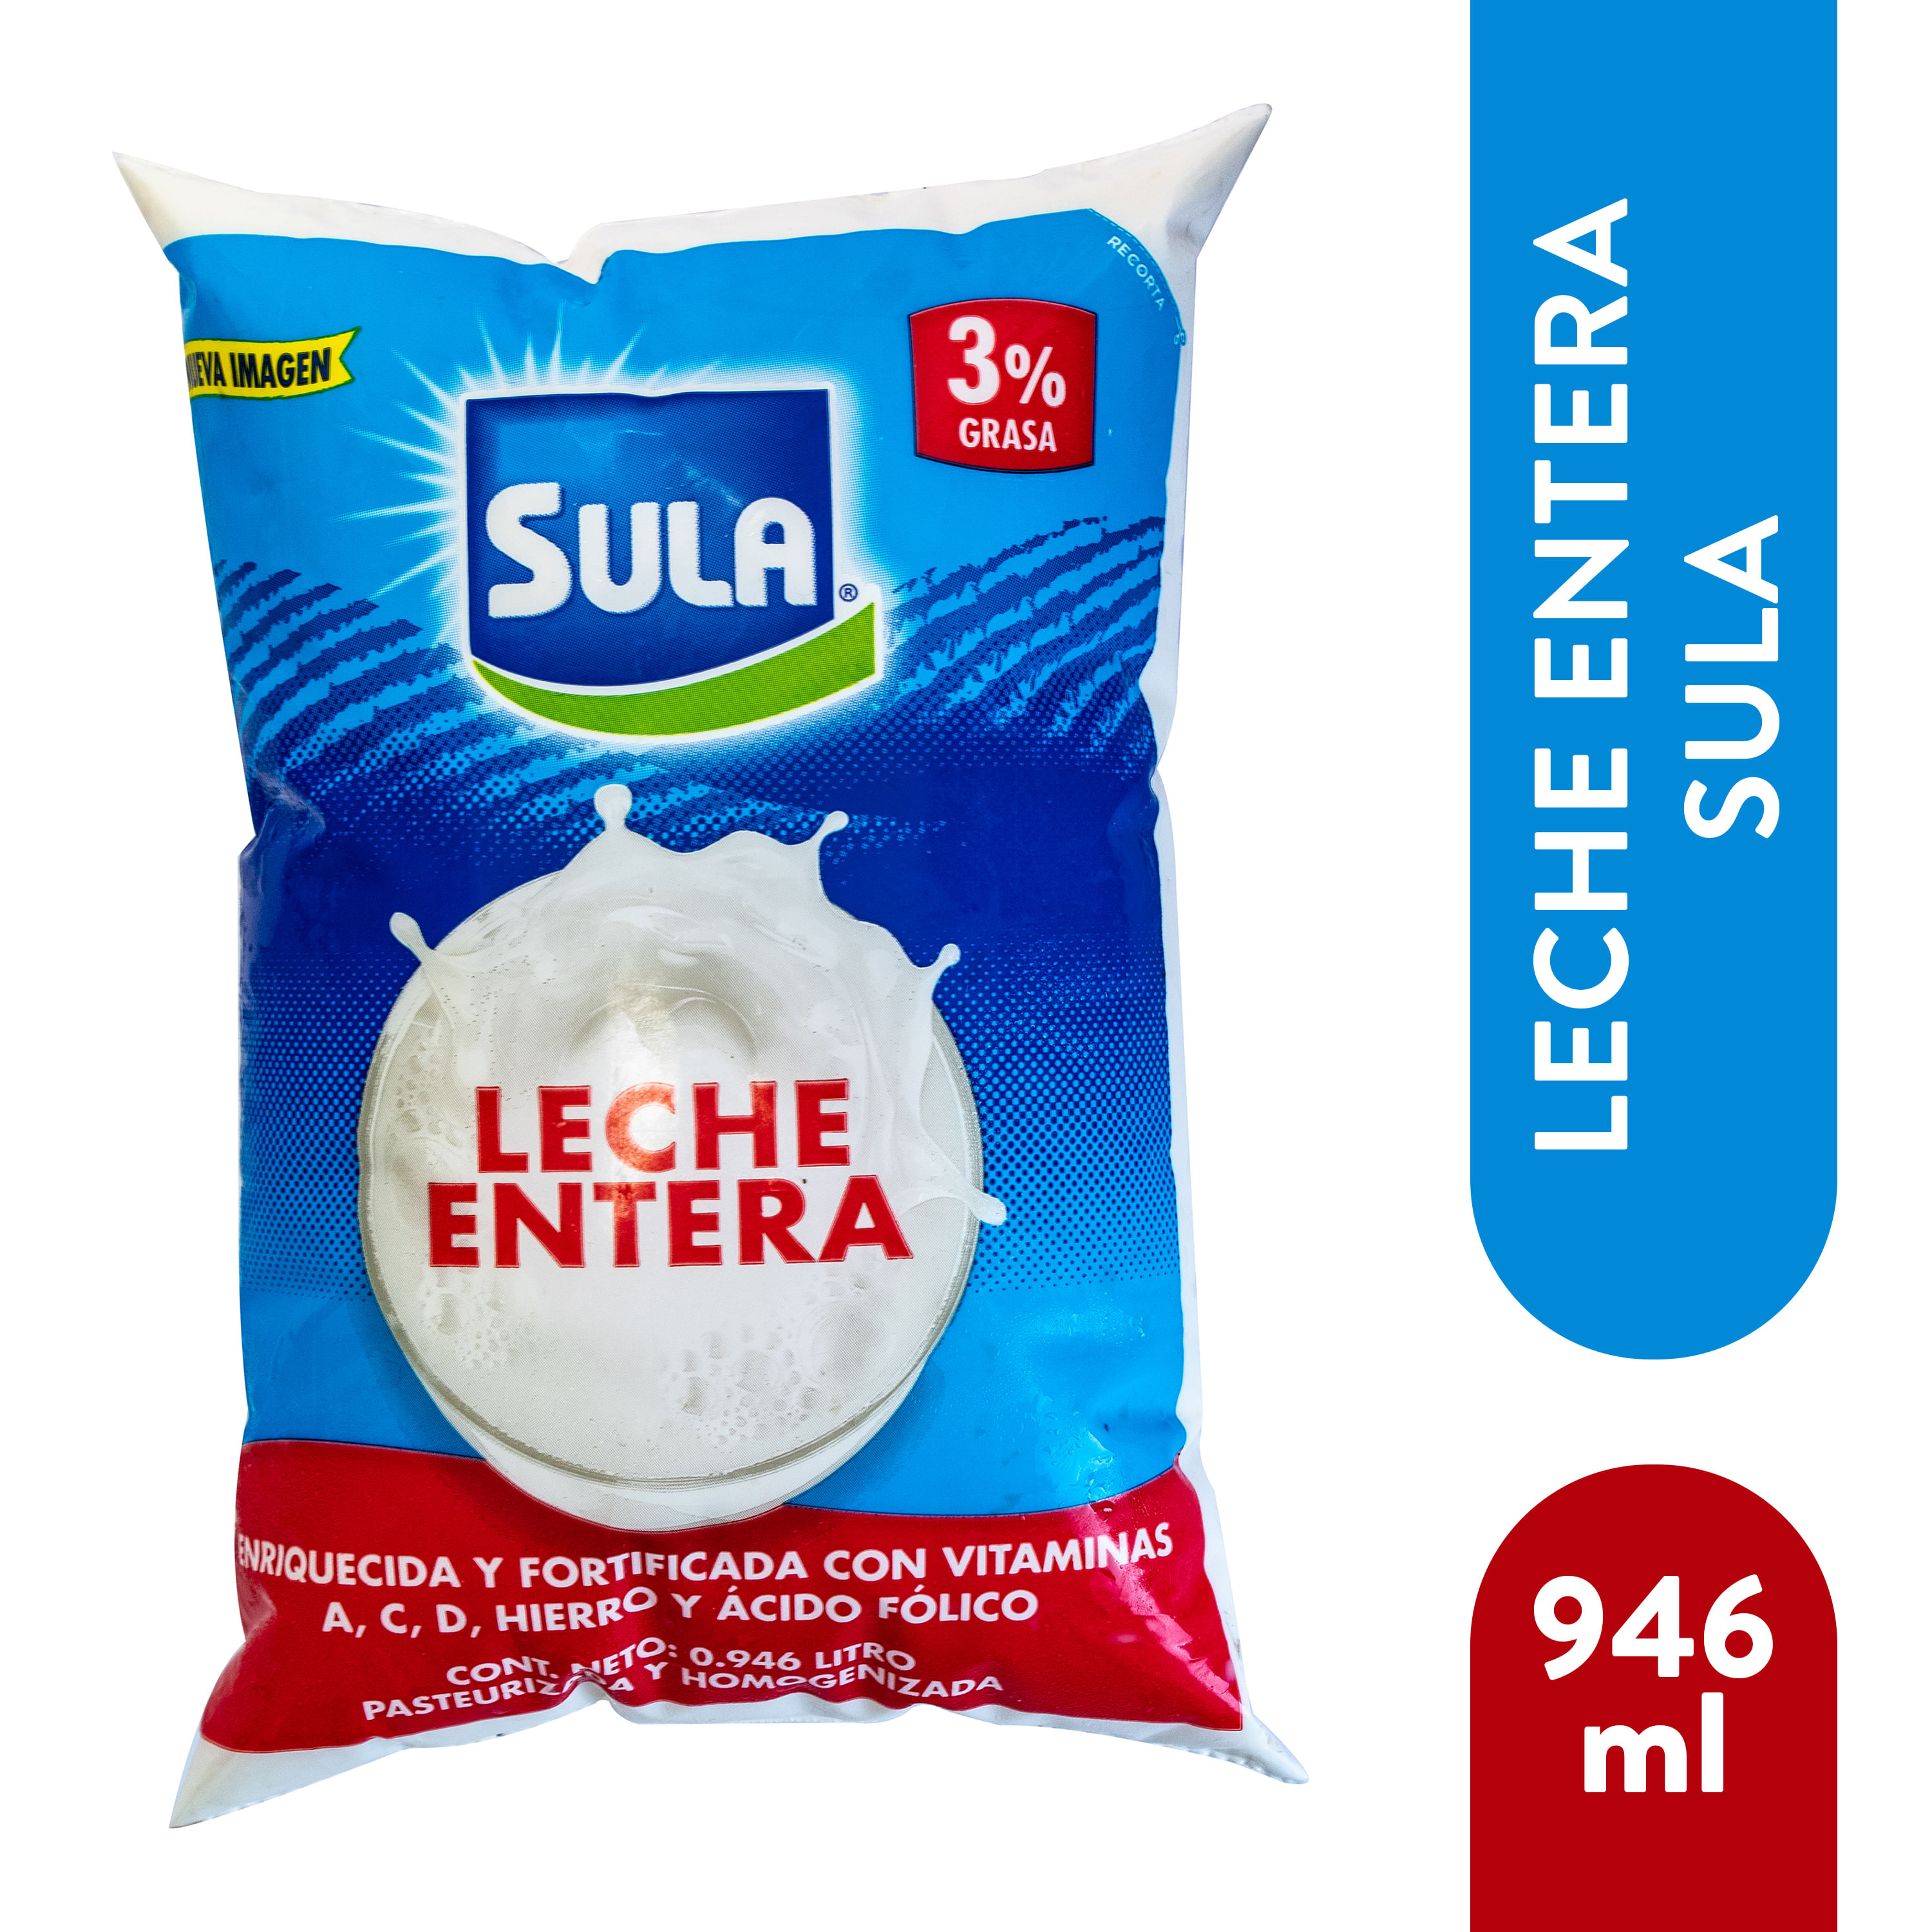 Comprar Leche Entera Sula Uht Enriquecida y Fortificada - 0.946ml